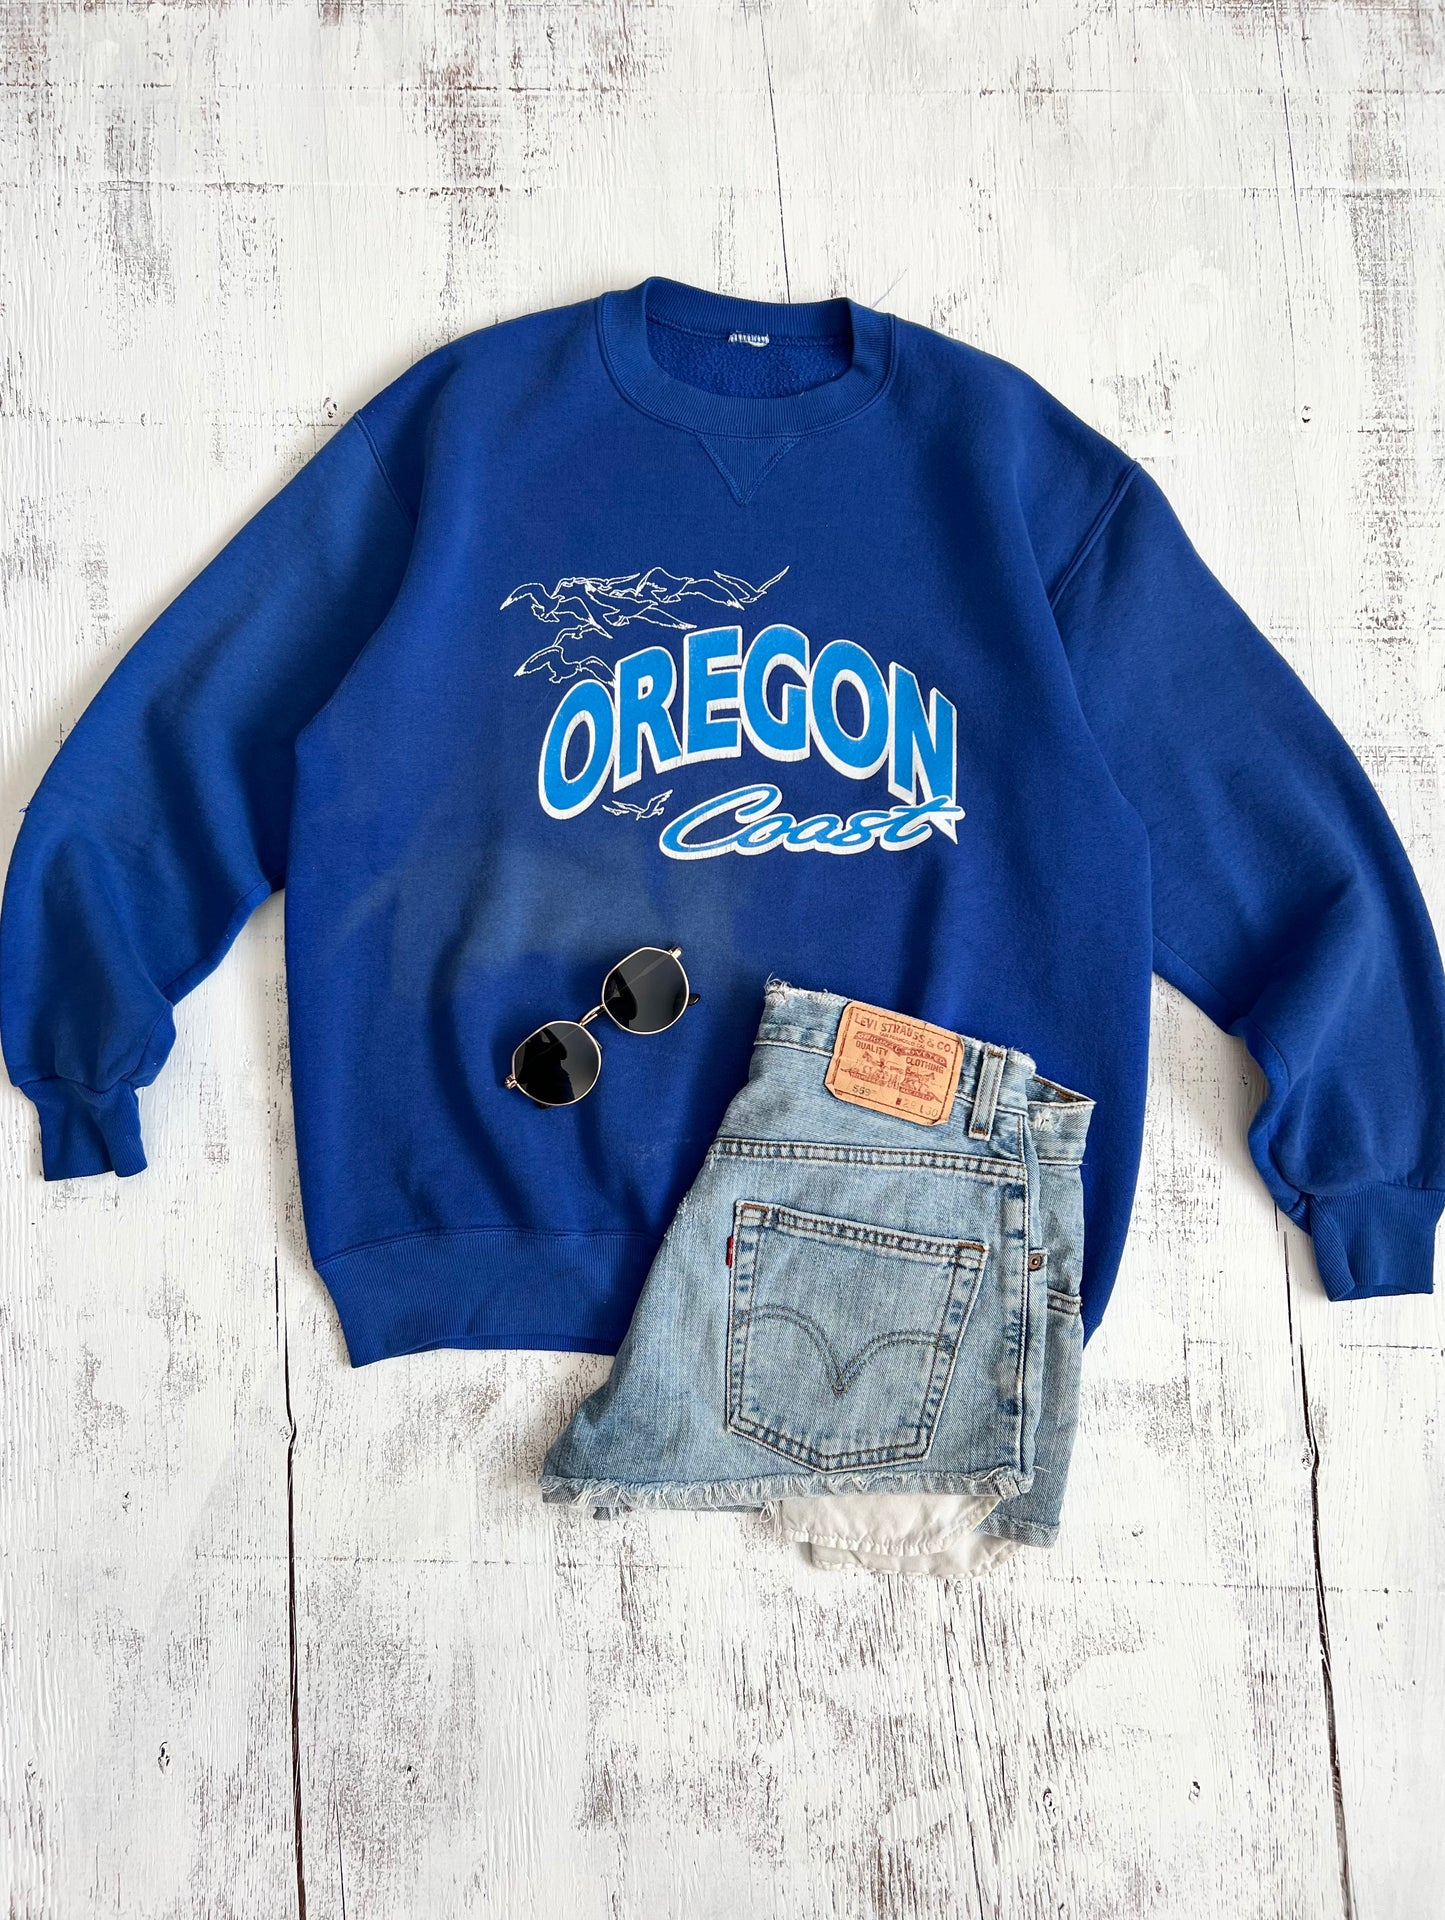 Oregon Coast Russell Athletics Crewneck Sweatshirt (L)